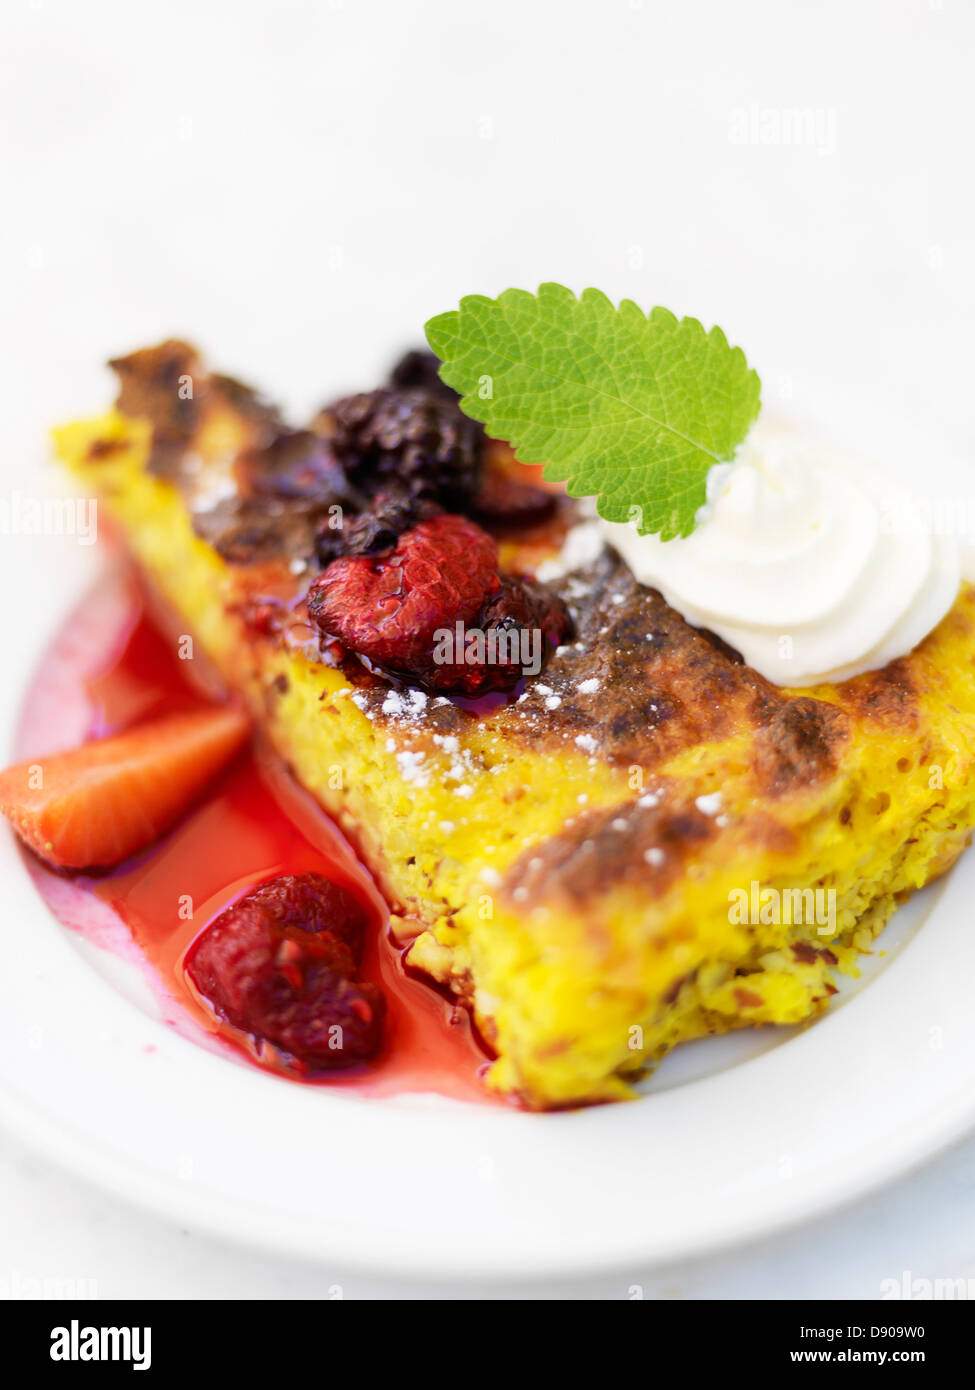 Gâteau aux fruits rouges safran et à la crème fouettée, la Suède. Banque D'Images